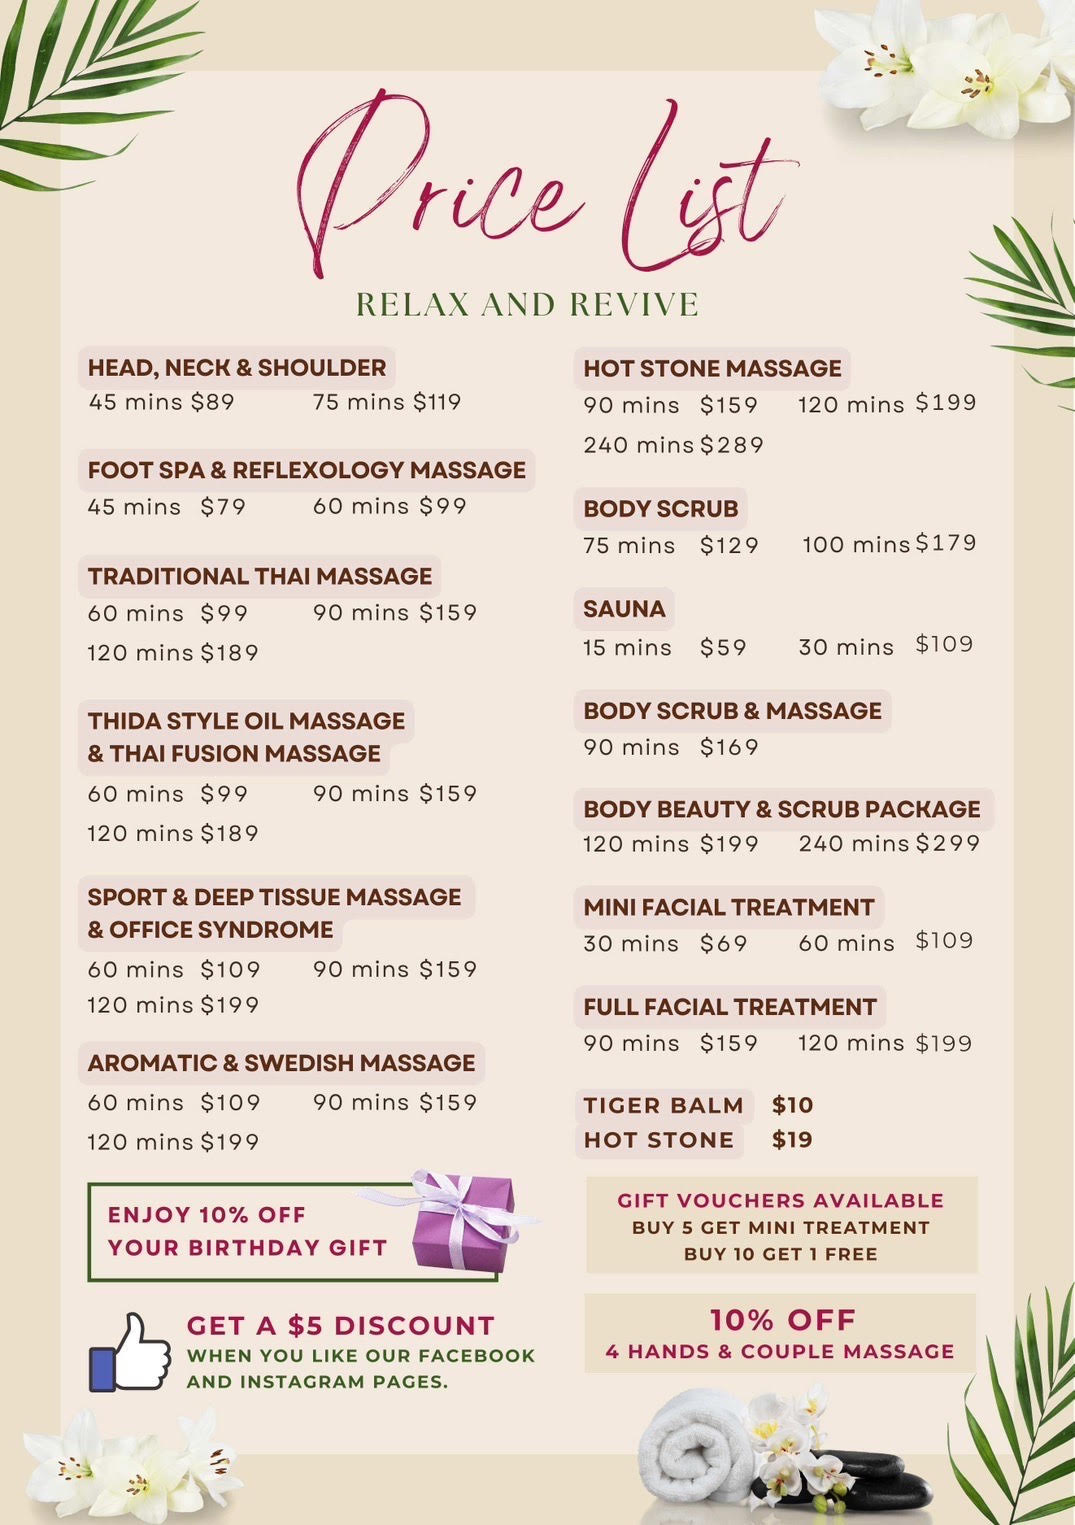 Thida Thai Massage in Birkenhead price list.